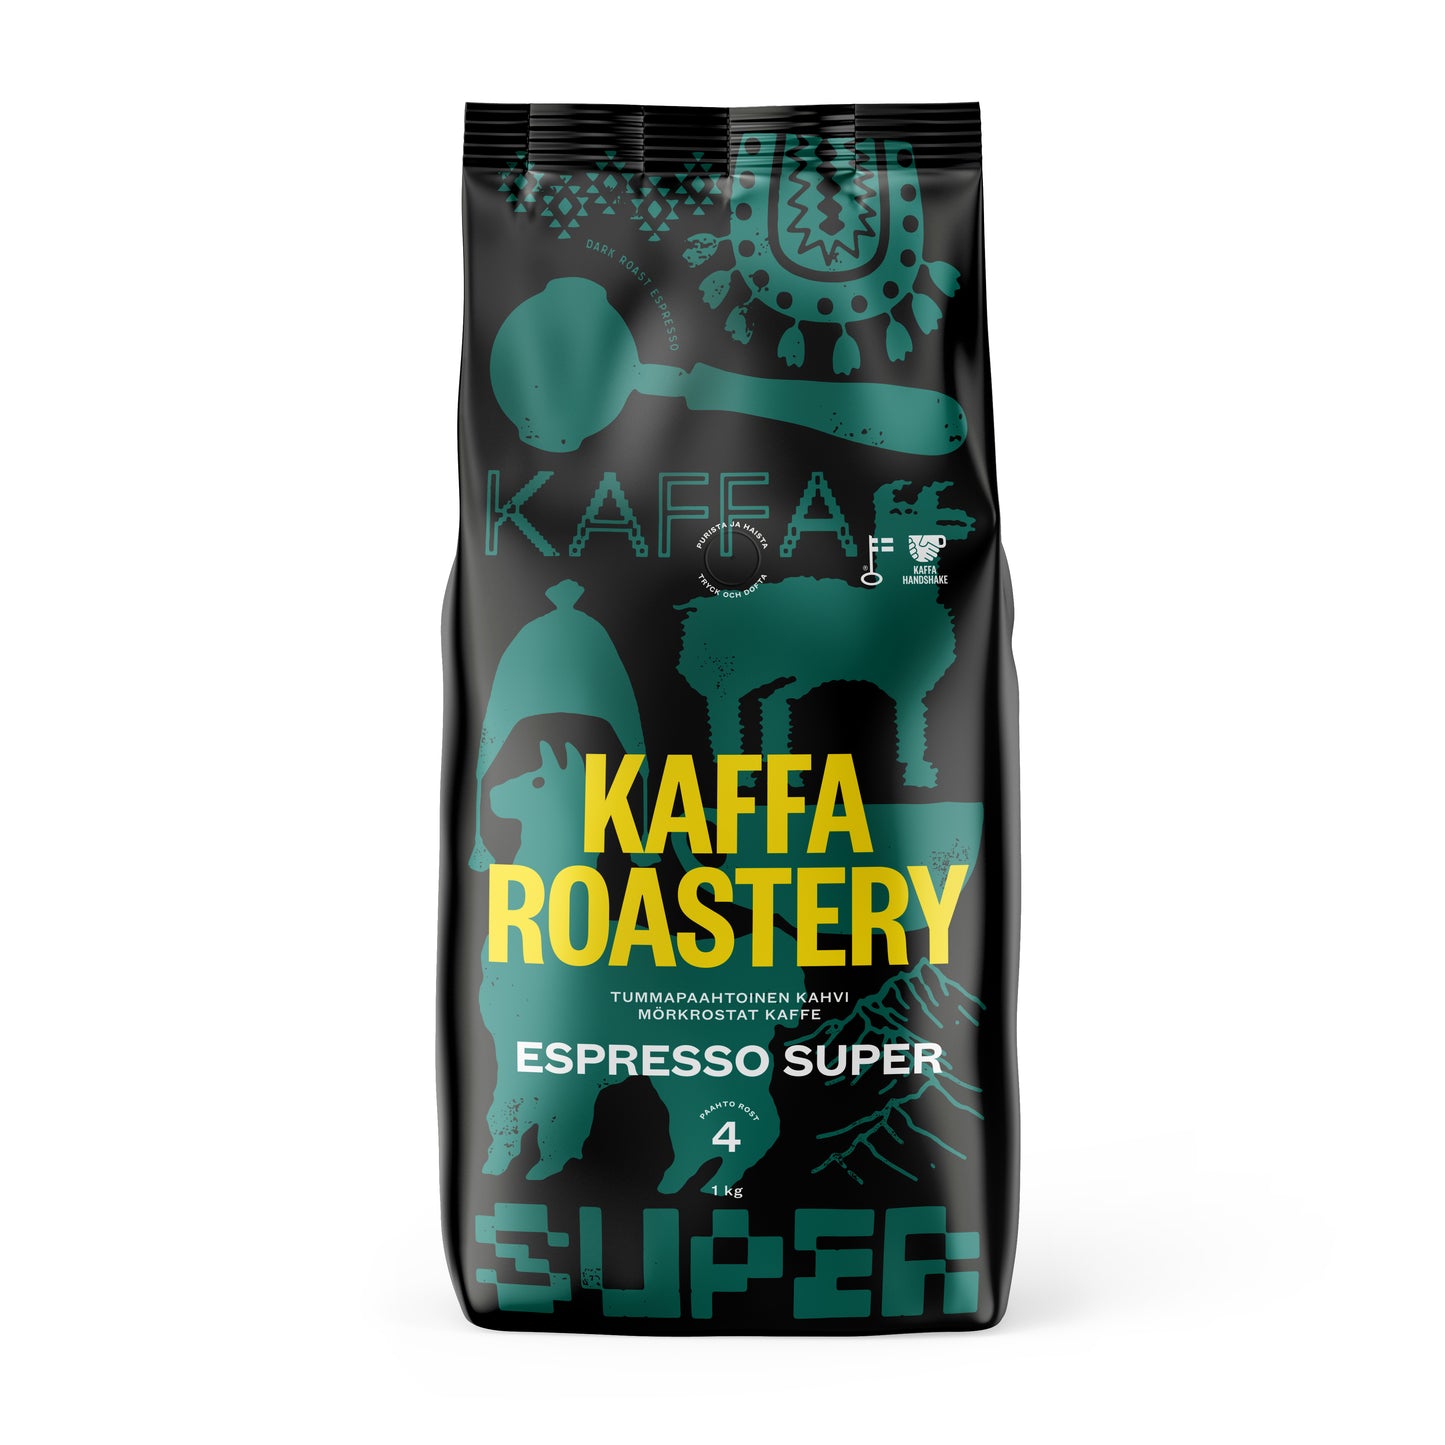 Espresso Super (Espresso Latte)